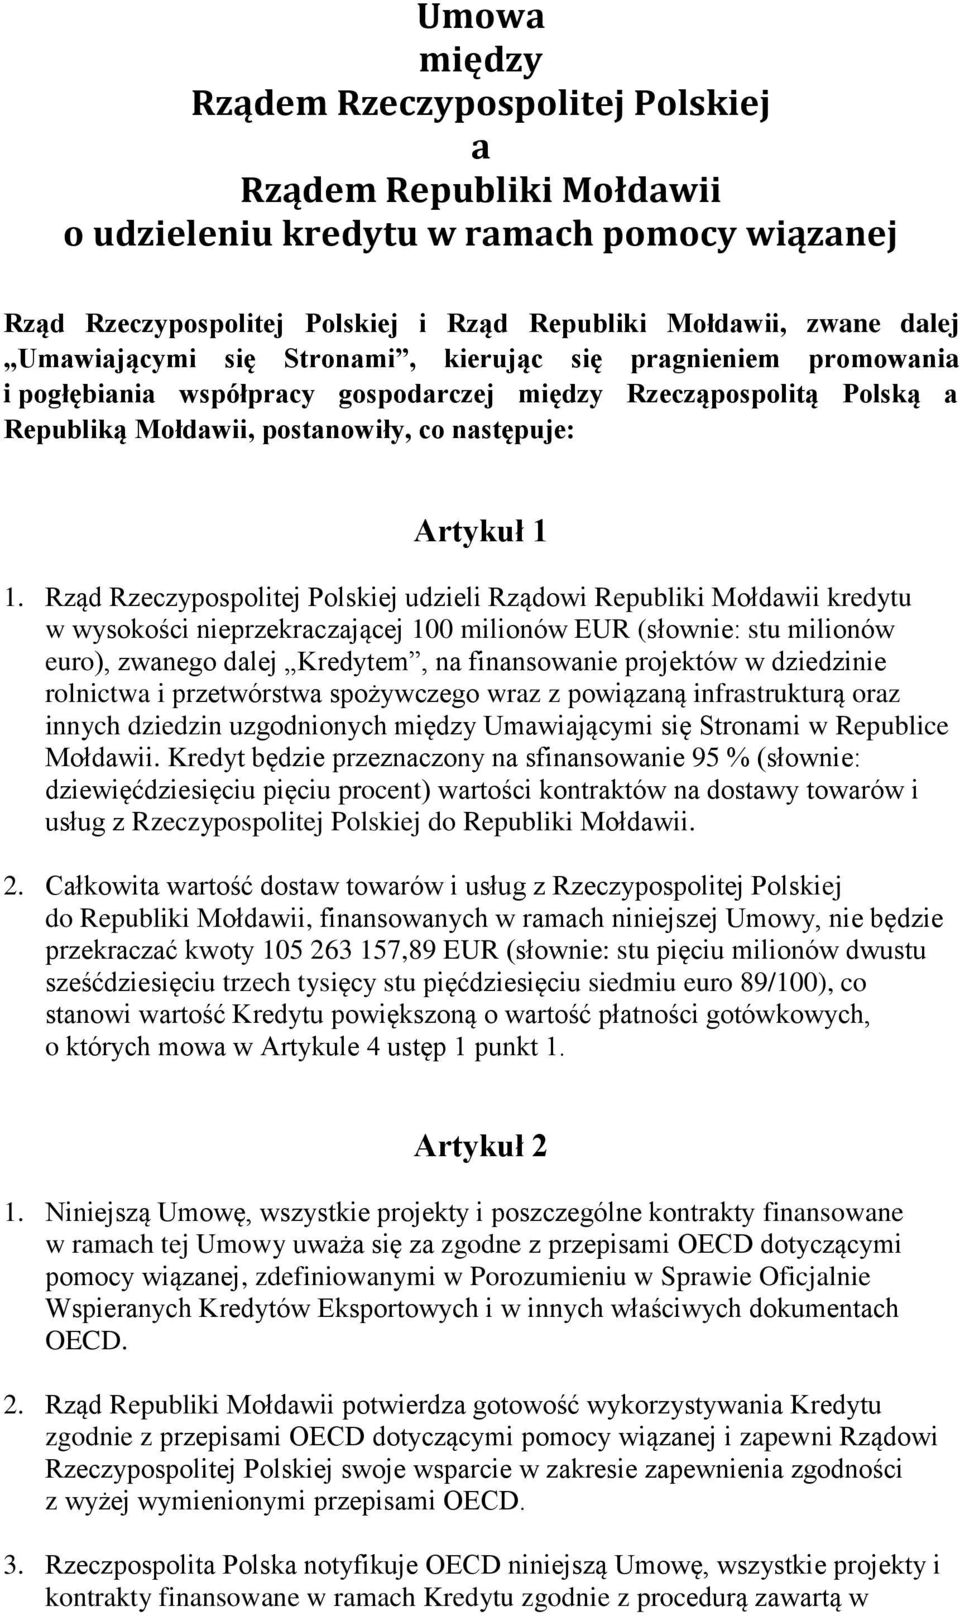 Rząd Rzeczypospolitej Polskiej udzieli Rządowi Republiki Mołdawii kredytu w wysokości nieprzekraczającej 100 milionów EUR (słownie: stu milionów euro), zwanego dalej Kredytem, na finansowanie